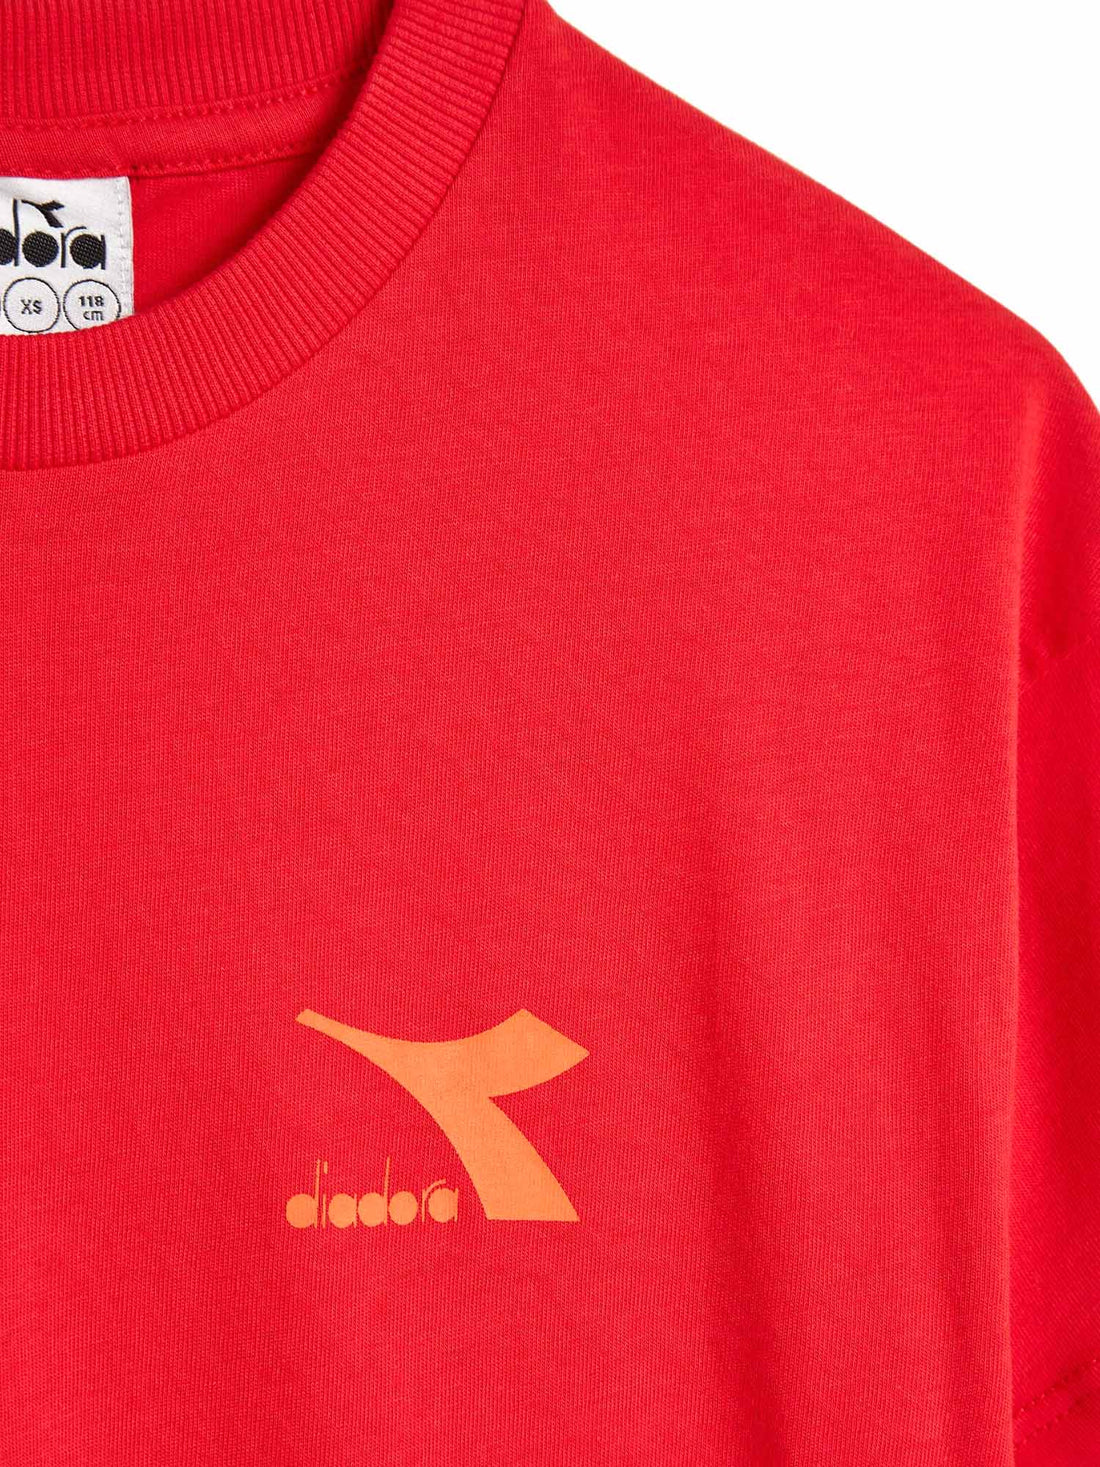 T-shirt Rosso Diadora